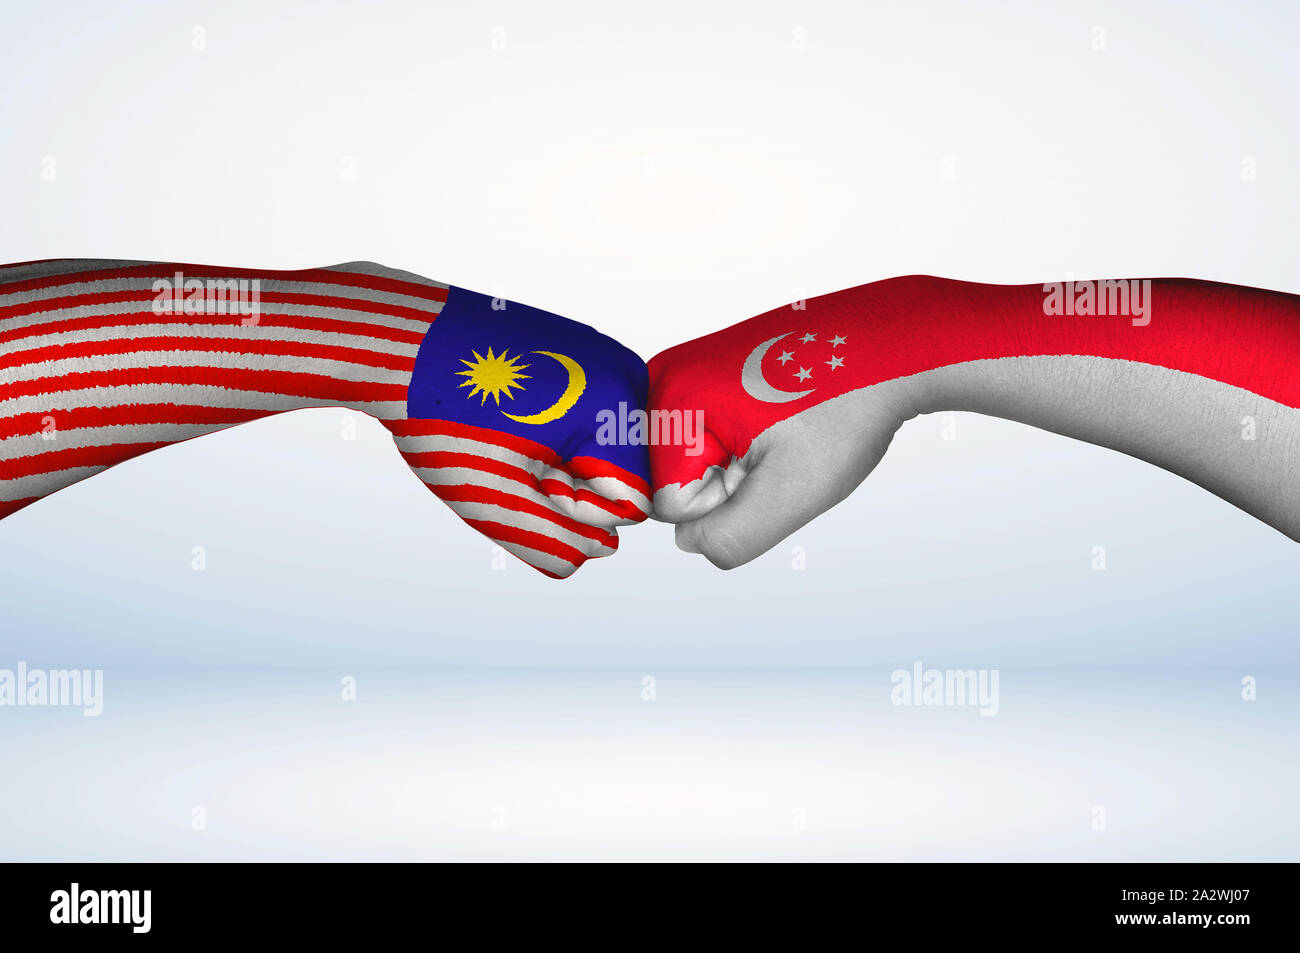 Fist bump der malaysischen und singapurischen Fahnen. Zwei Hände mit gemalten Fahnen von Malaysia und Singapur Flagge Faust stoßen als Symbol der Einheit. Stockfoto